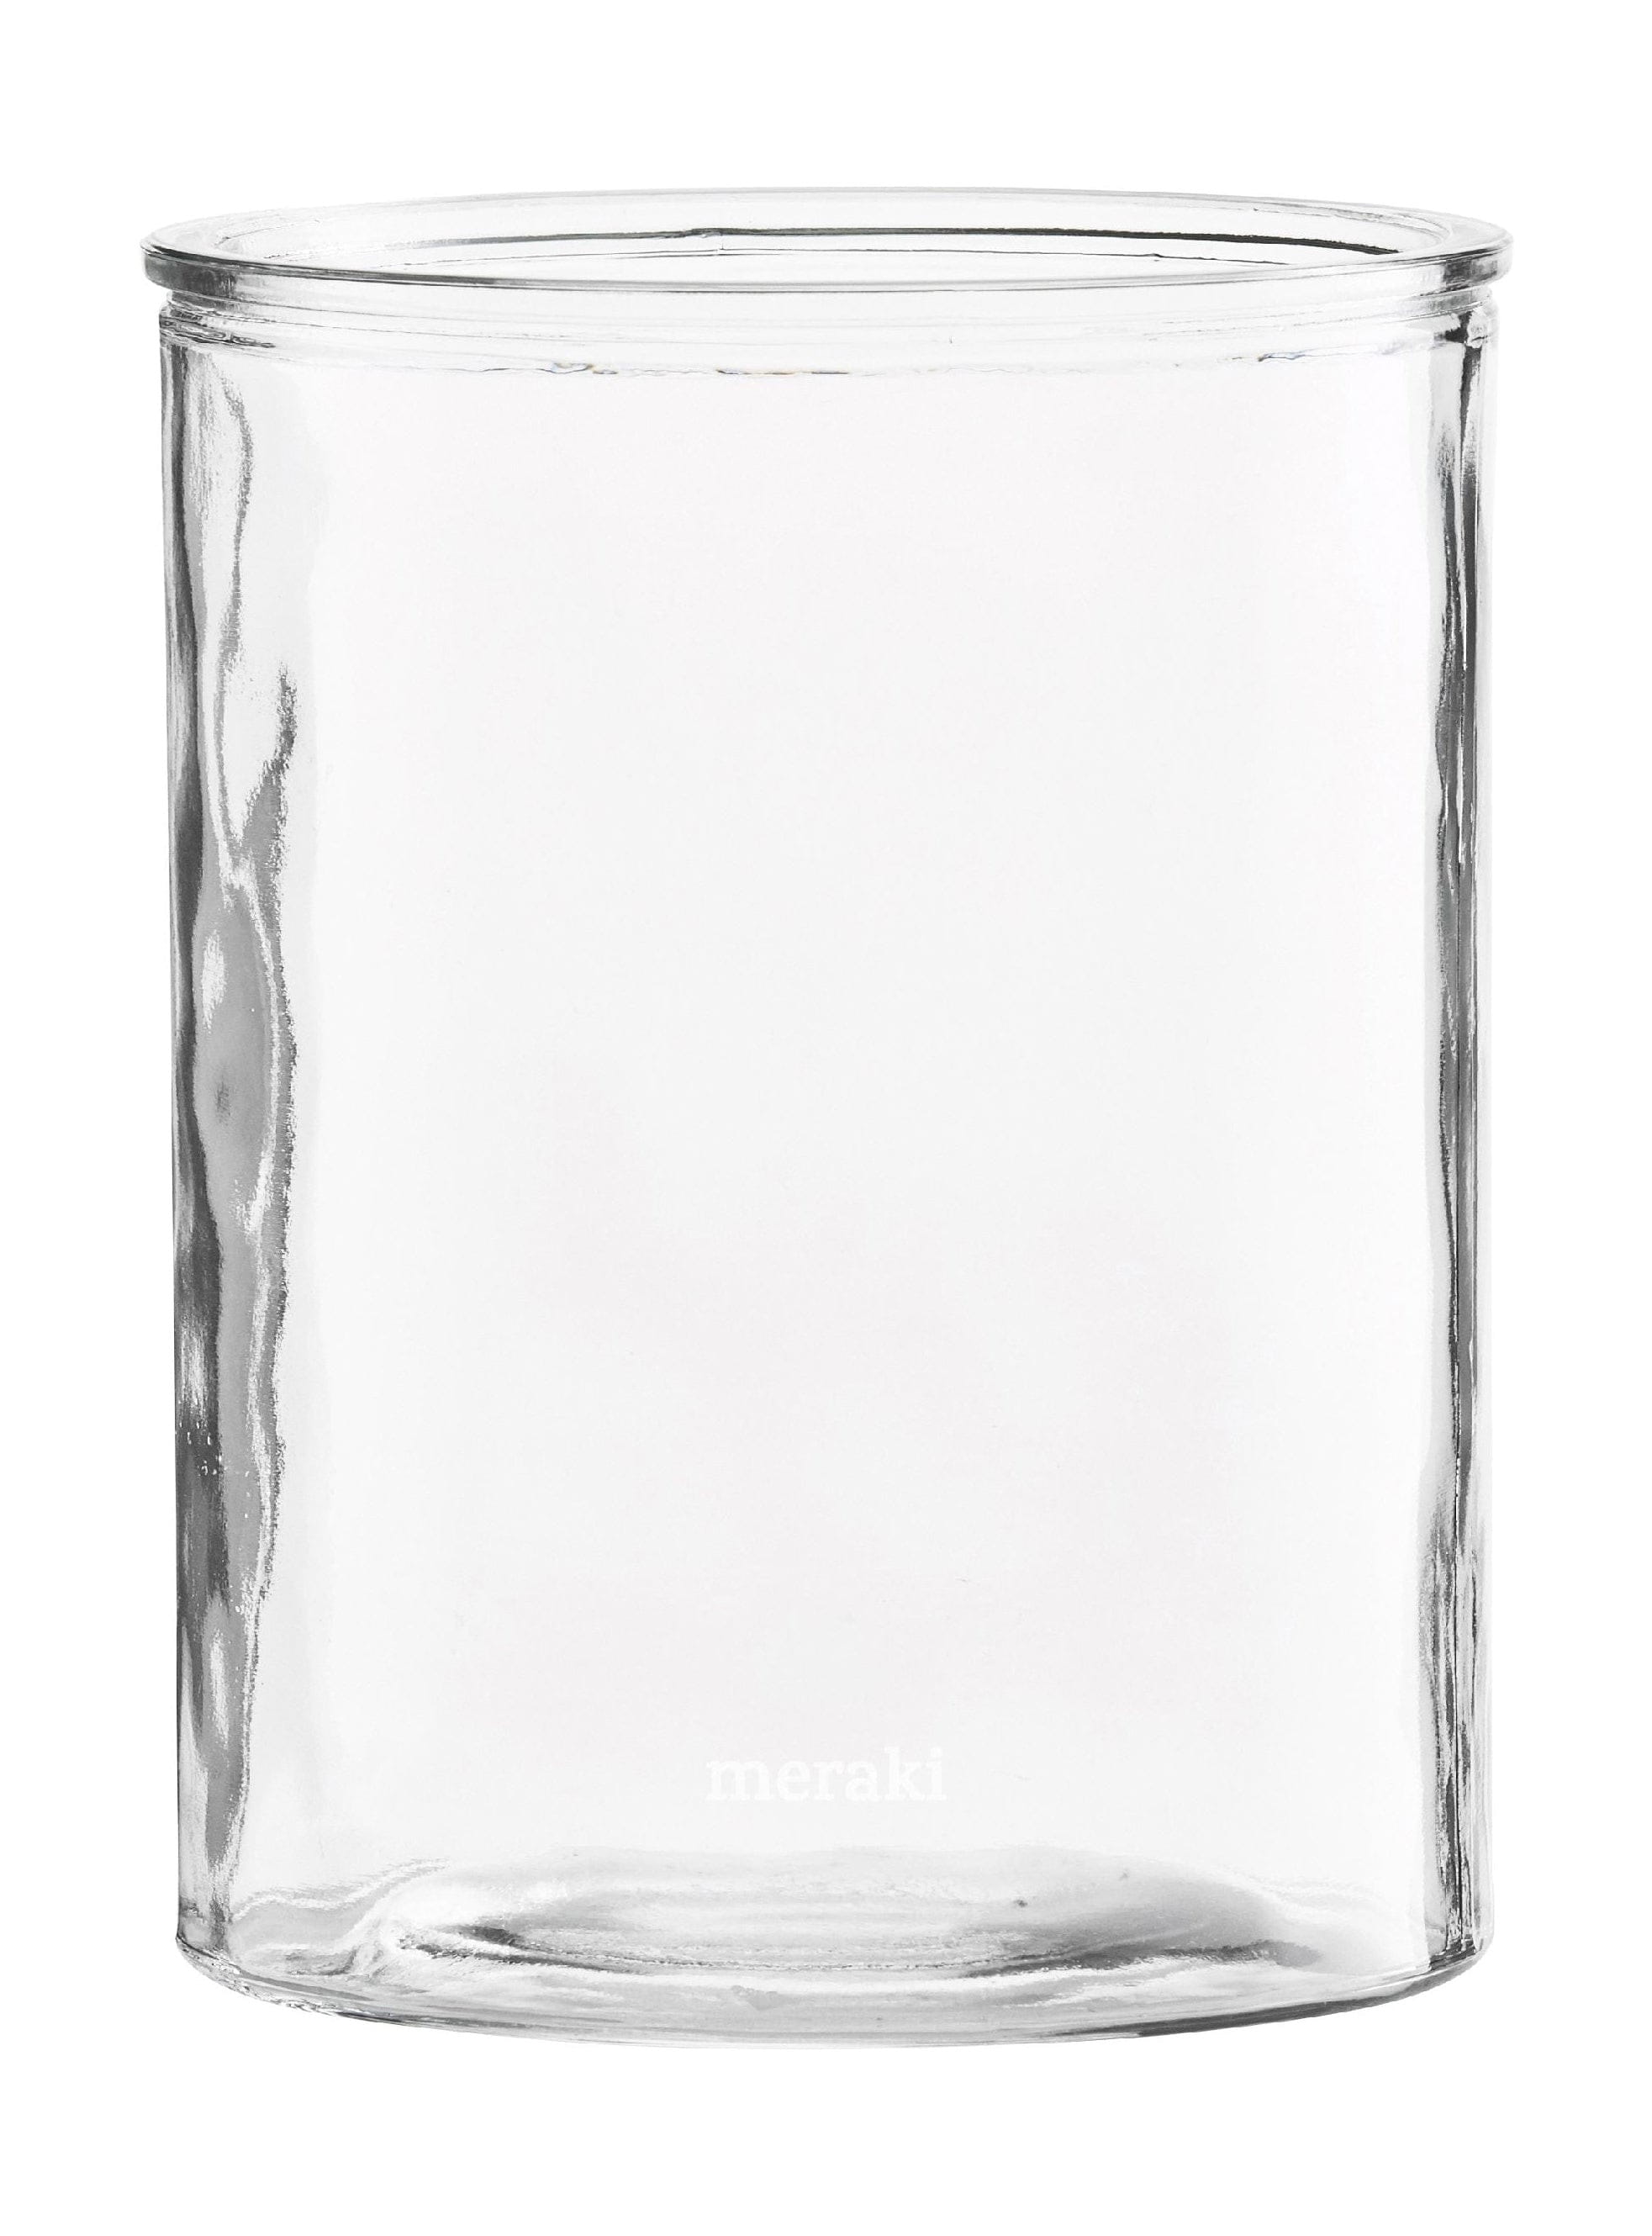 Meraki sylindervase, Øx H 12,5x15 cm